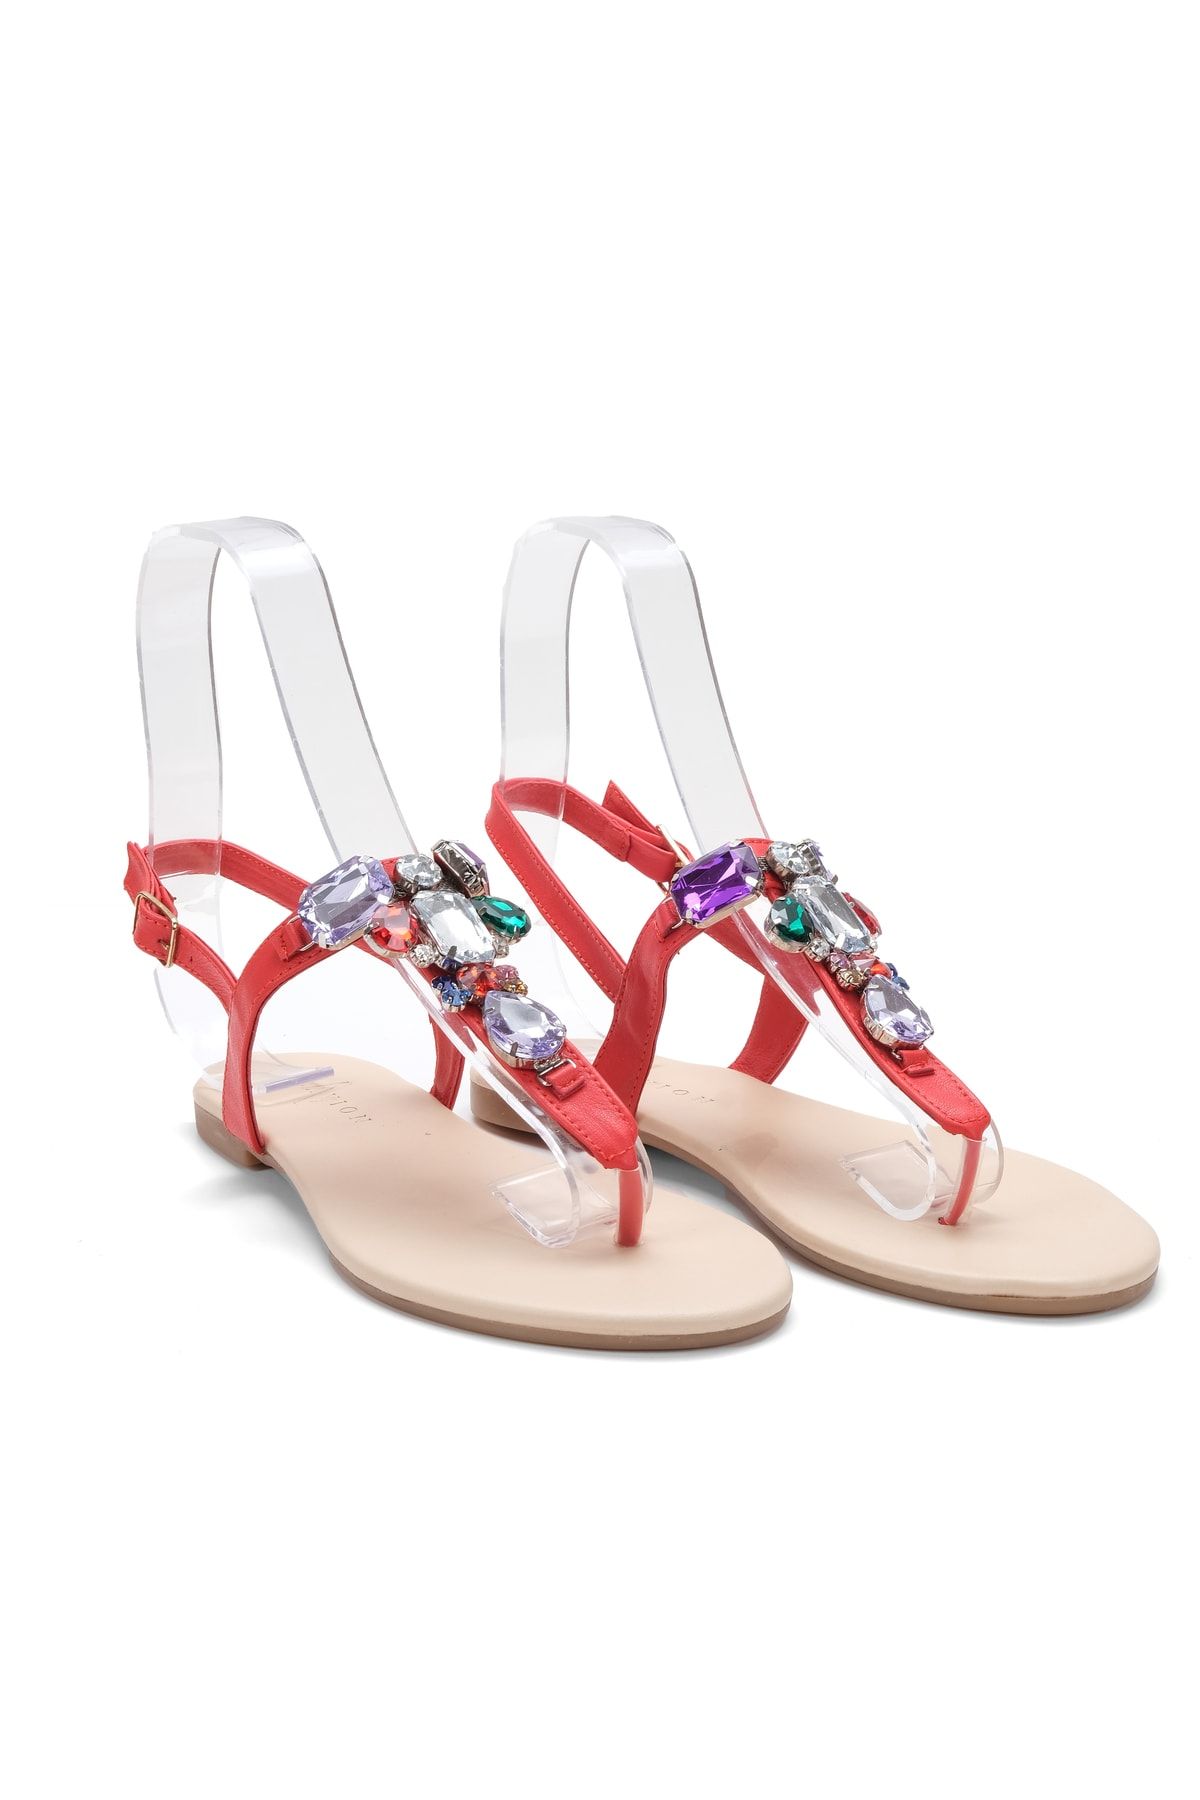 Oblavion Lavion Yeni Sezon Hakiki Deri Kırmızı Bej Çok Renkli Günlük Taşlı Kadın Sandalet